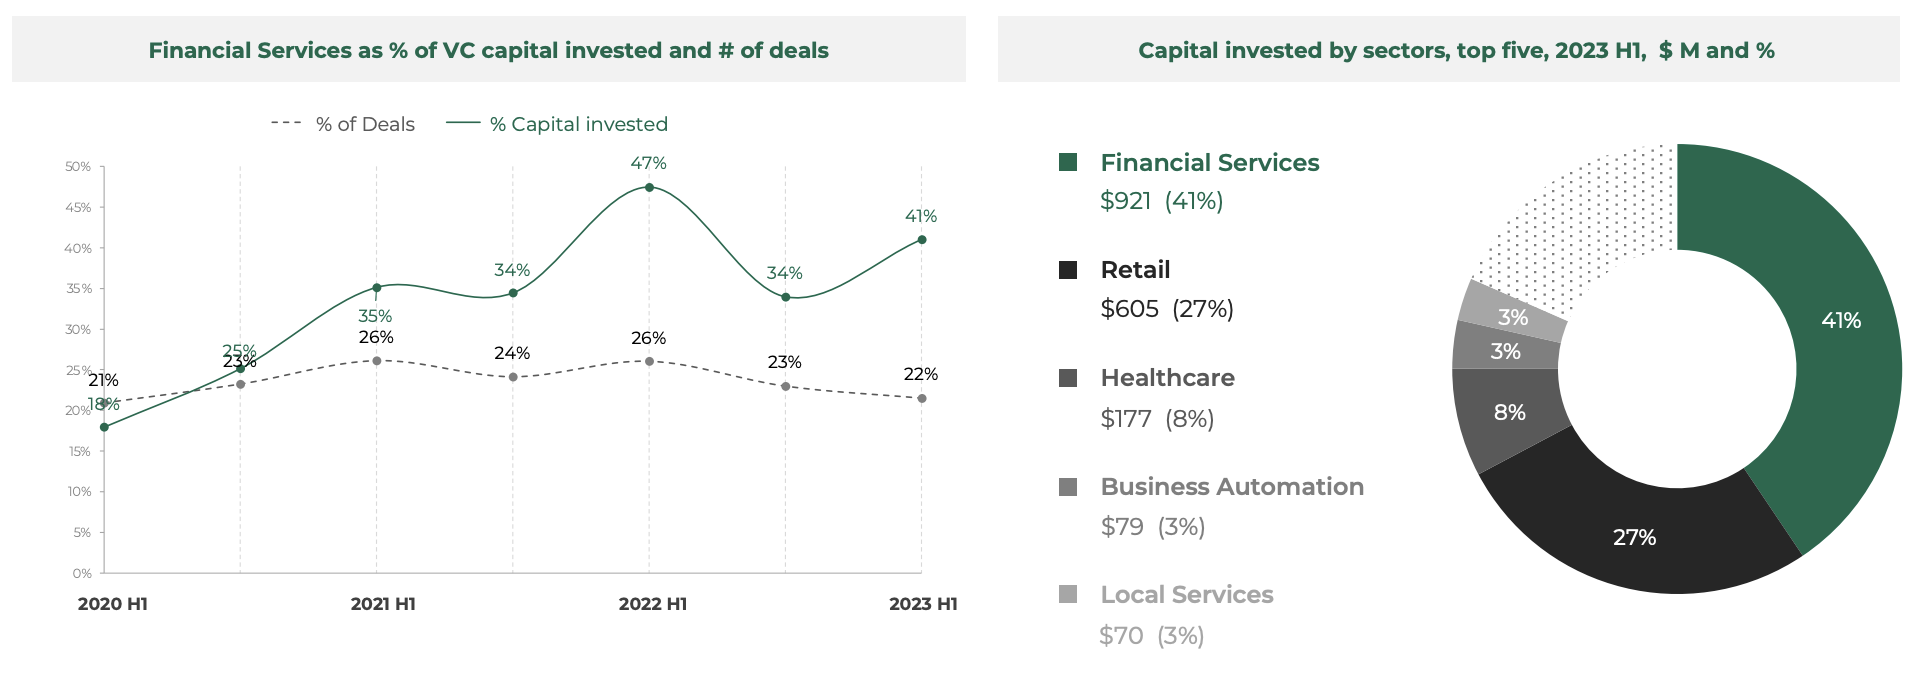 Доля финансовых услуг в % от инвестированного венчурного капитала и количества сделок. Источник: Southeast Asia Tech Investment 2023 H1, Cento Ventures, декабрь 2023 г.